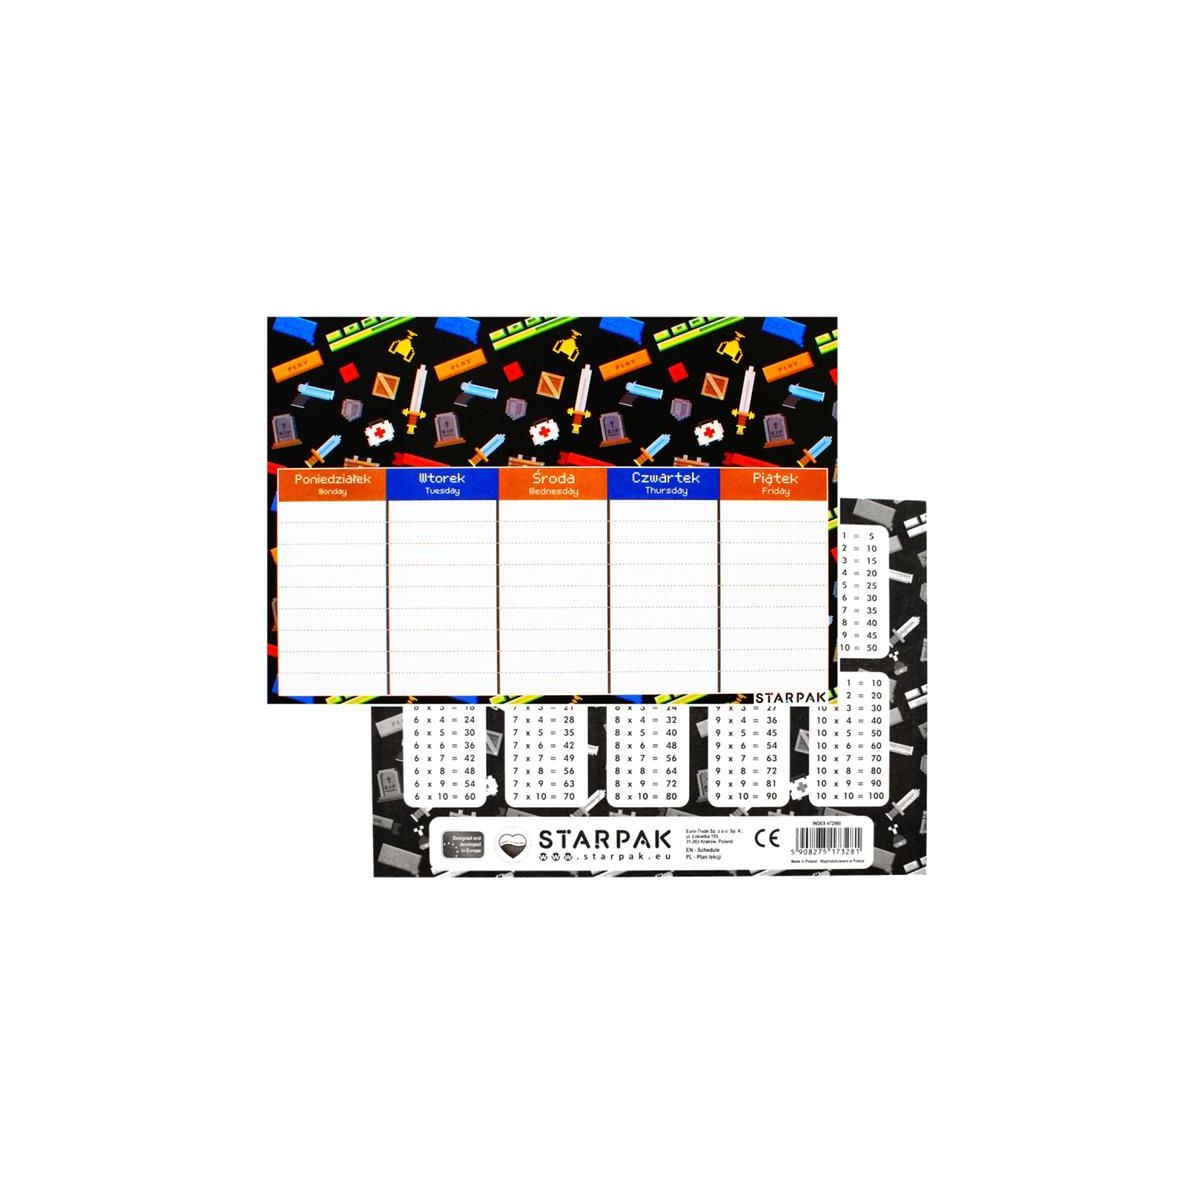 Plan lekcji Pixel Starpak (472980)